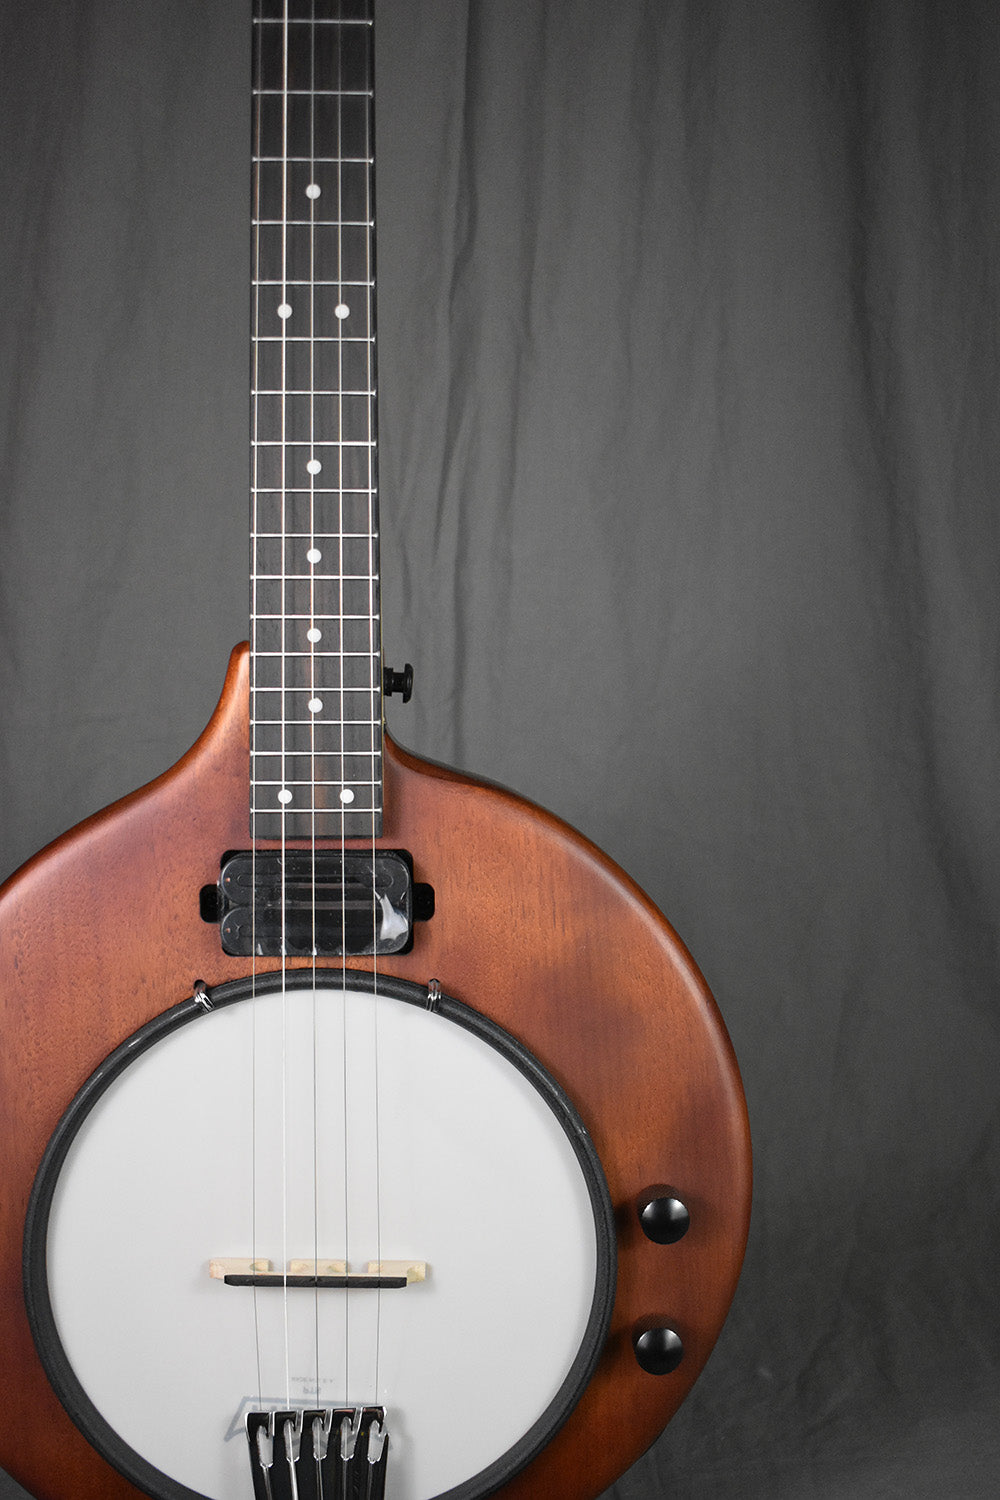 Gold Tone EB-5 Electric Banjo